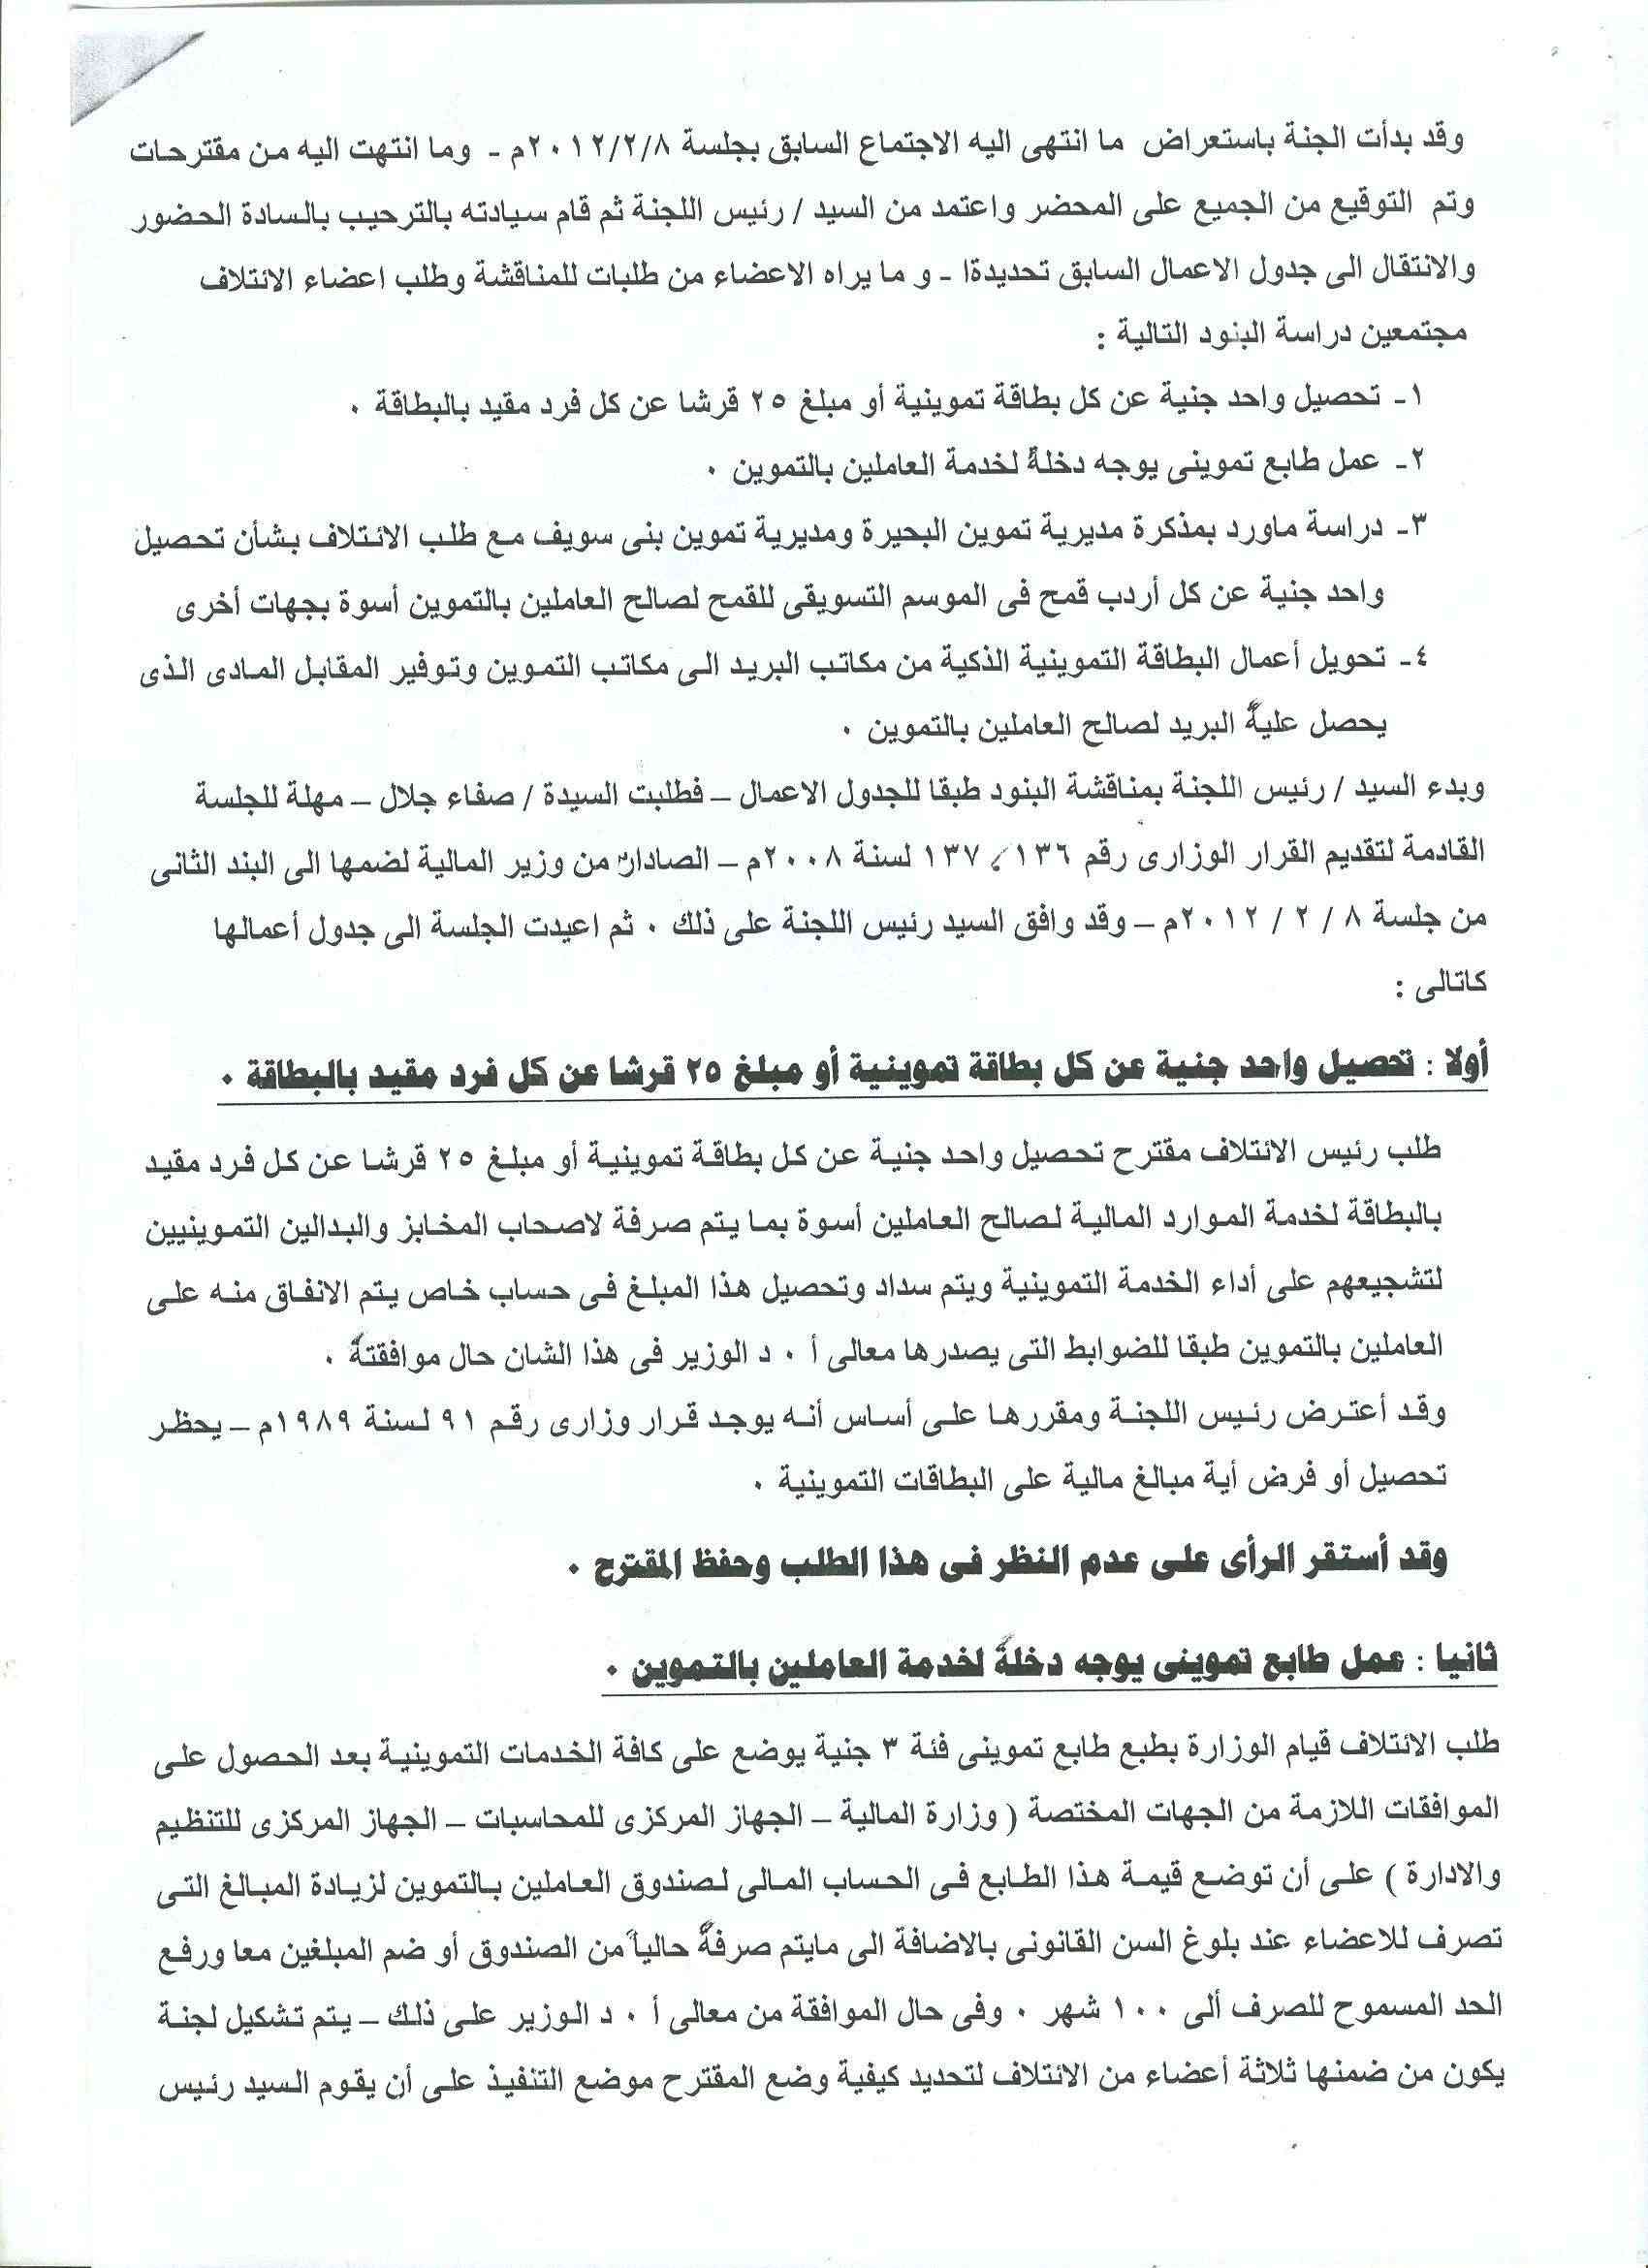 أعمال لجنة الإئتلاف العام للعاملين بتموين مصر بالوزاره خلال شهر فبراير 2012 - صفحة 2 15-210